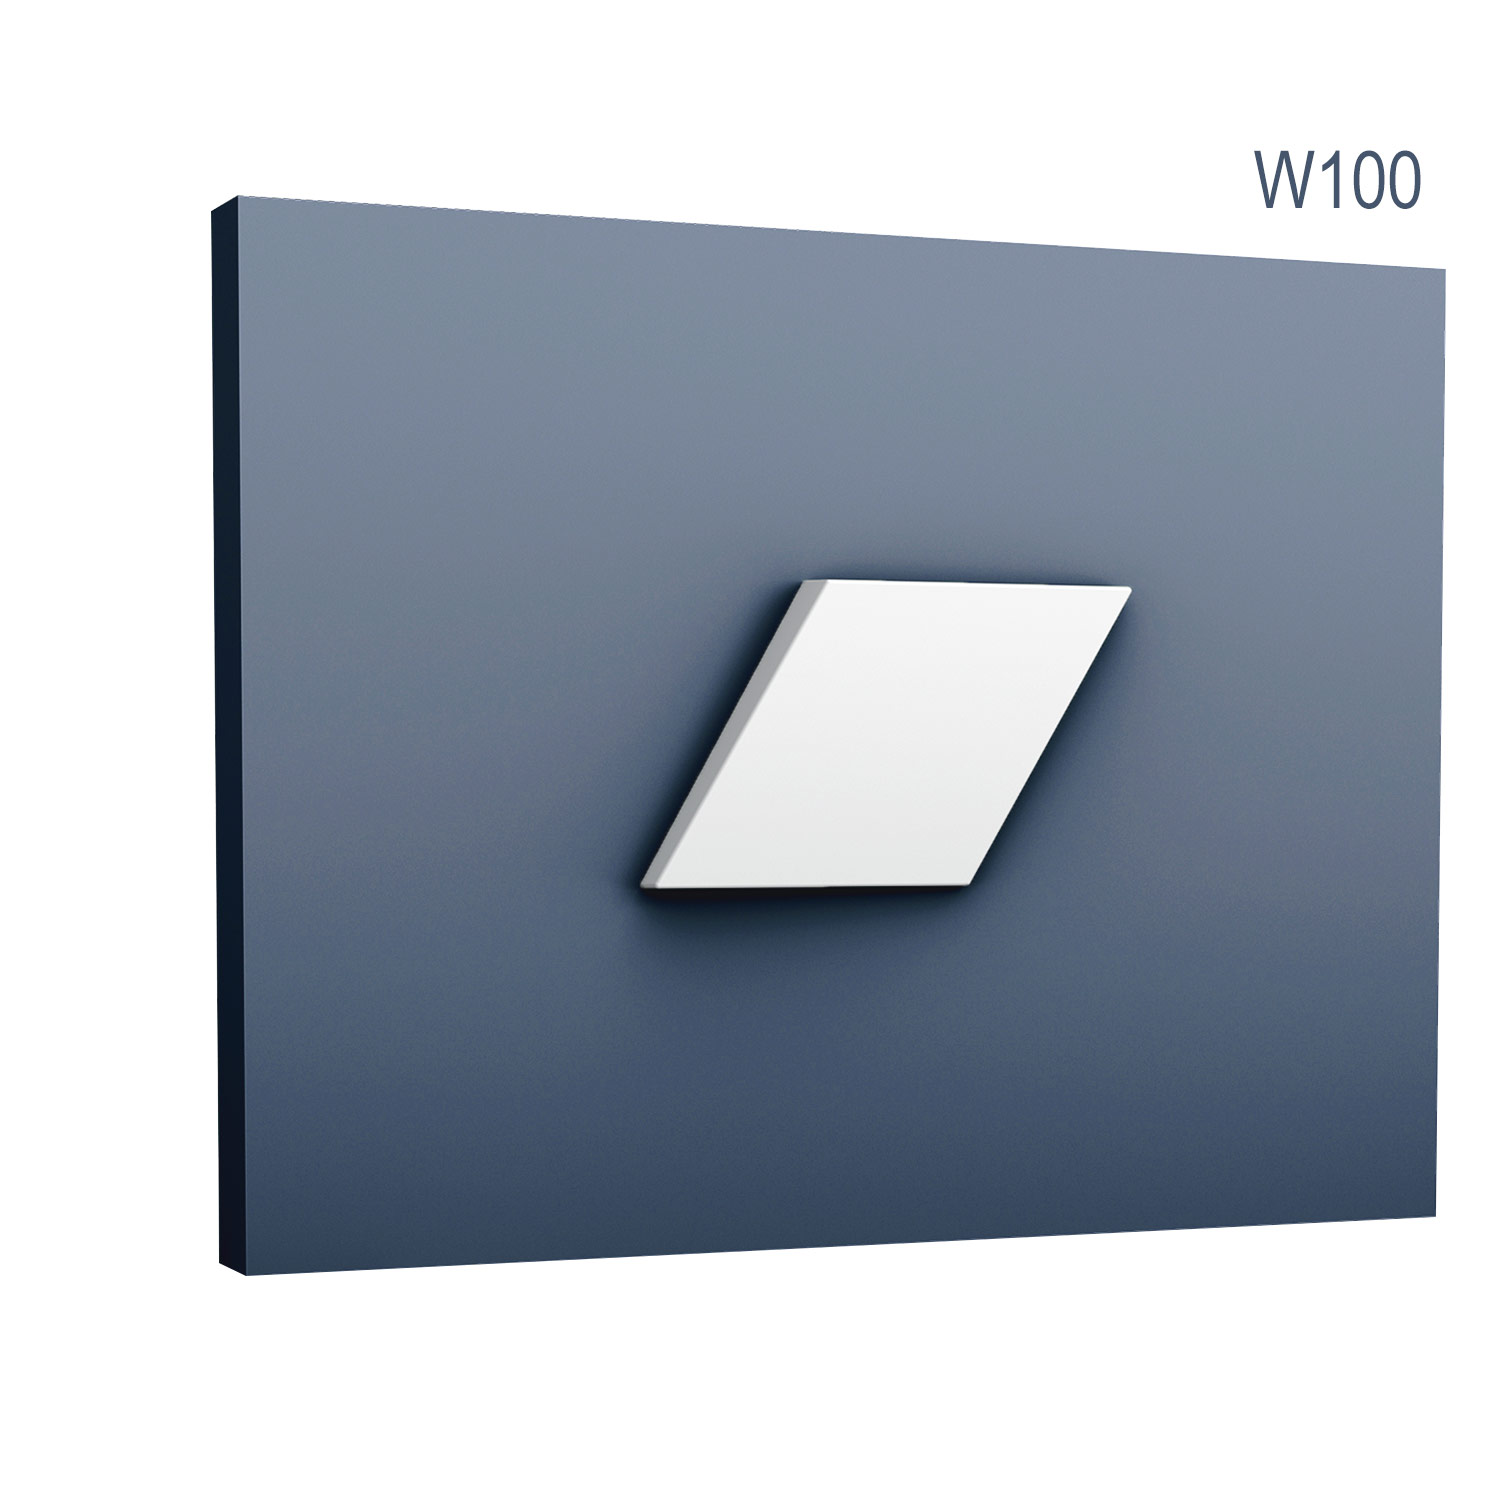 Panel Modern W100, Dimensiuni: 15 X 25.8 X 2.9 cm, Orac Decor